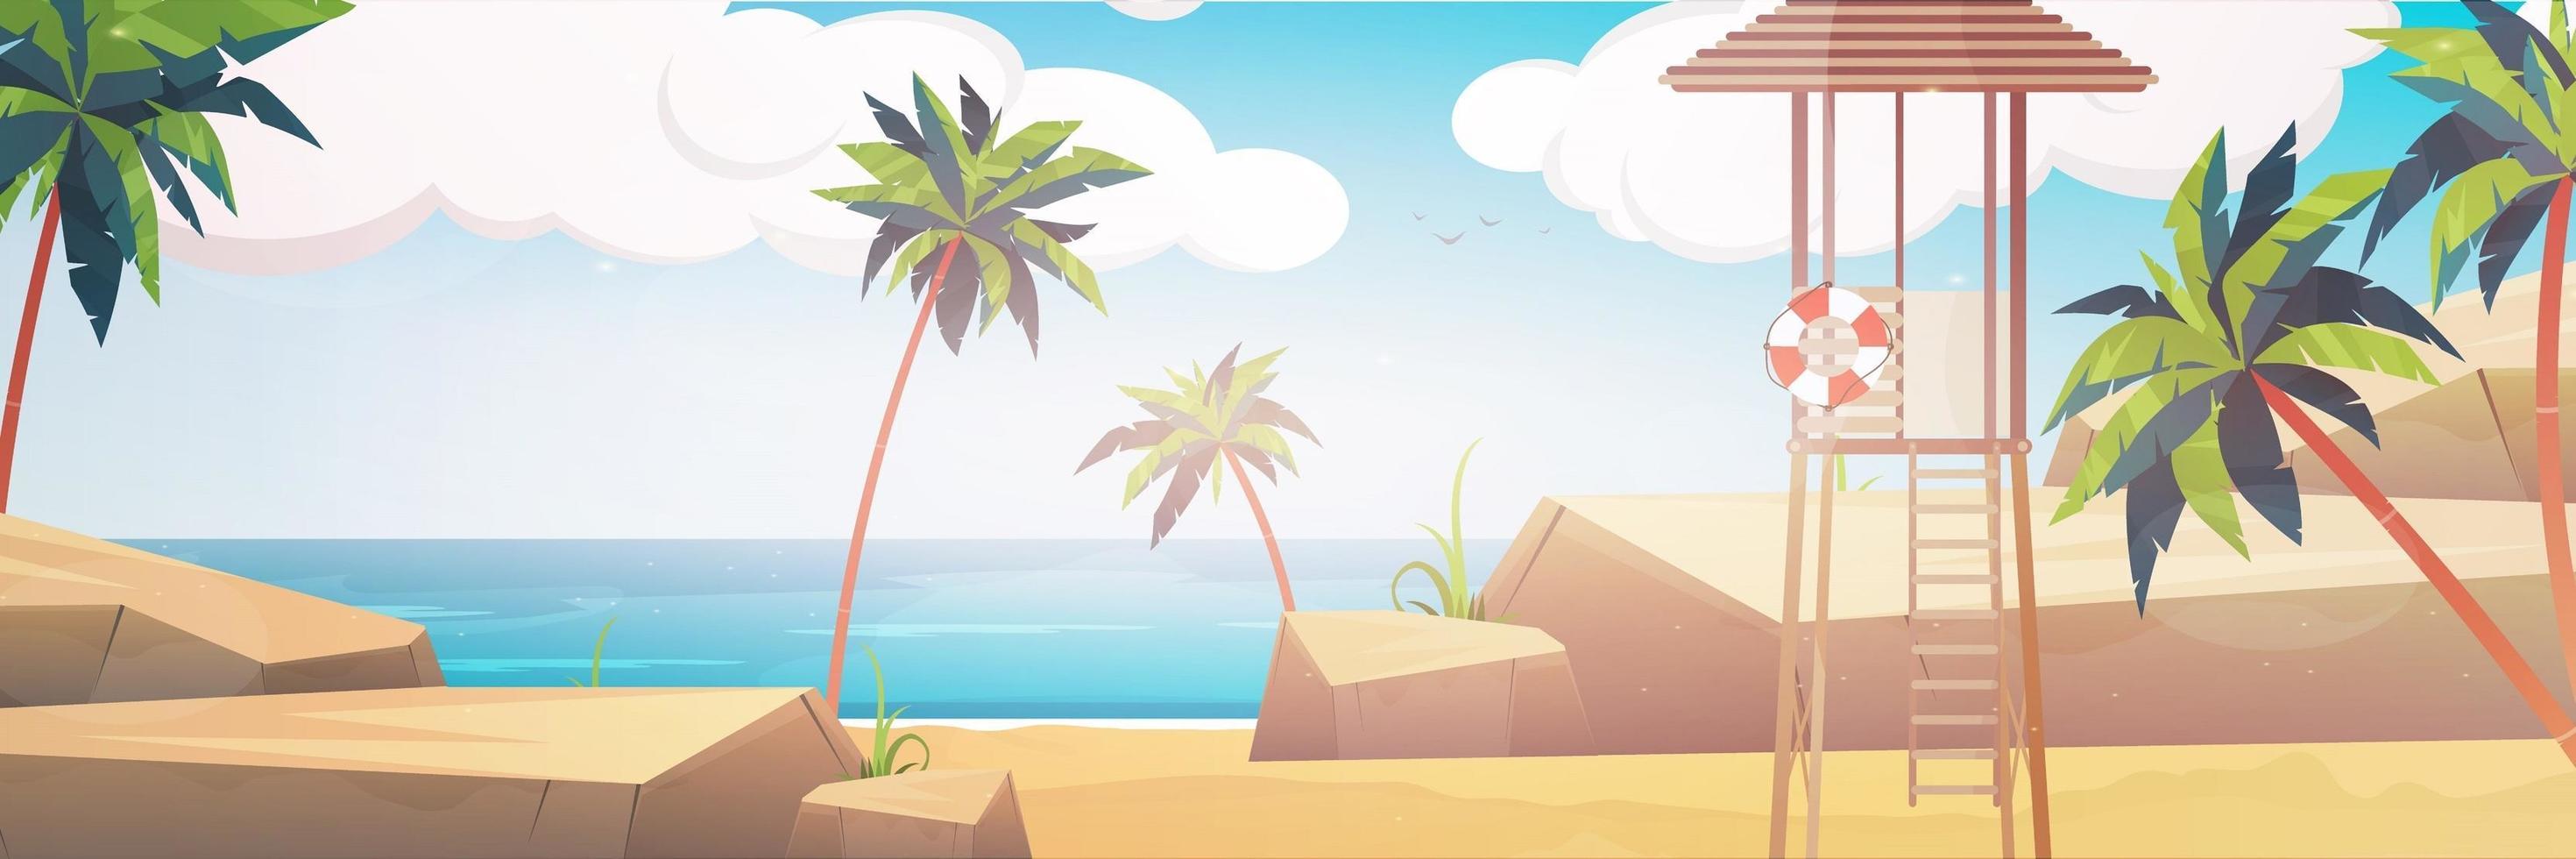 bellissimo paesaggio di spiaggia tropicale mare estivo con palme e montagne silhouette banner orizzontale vettore